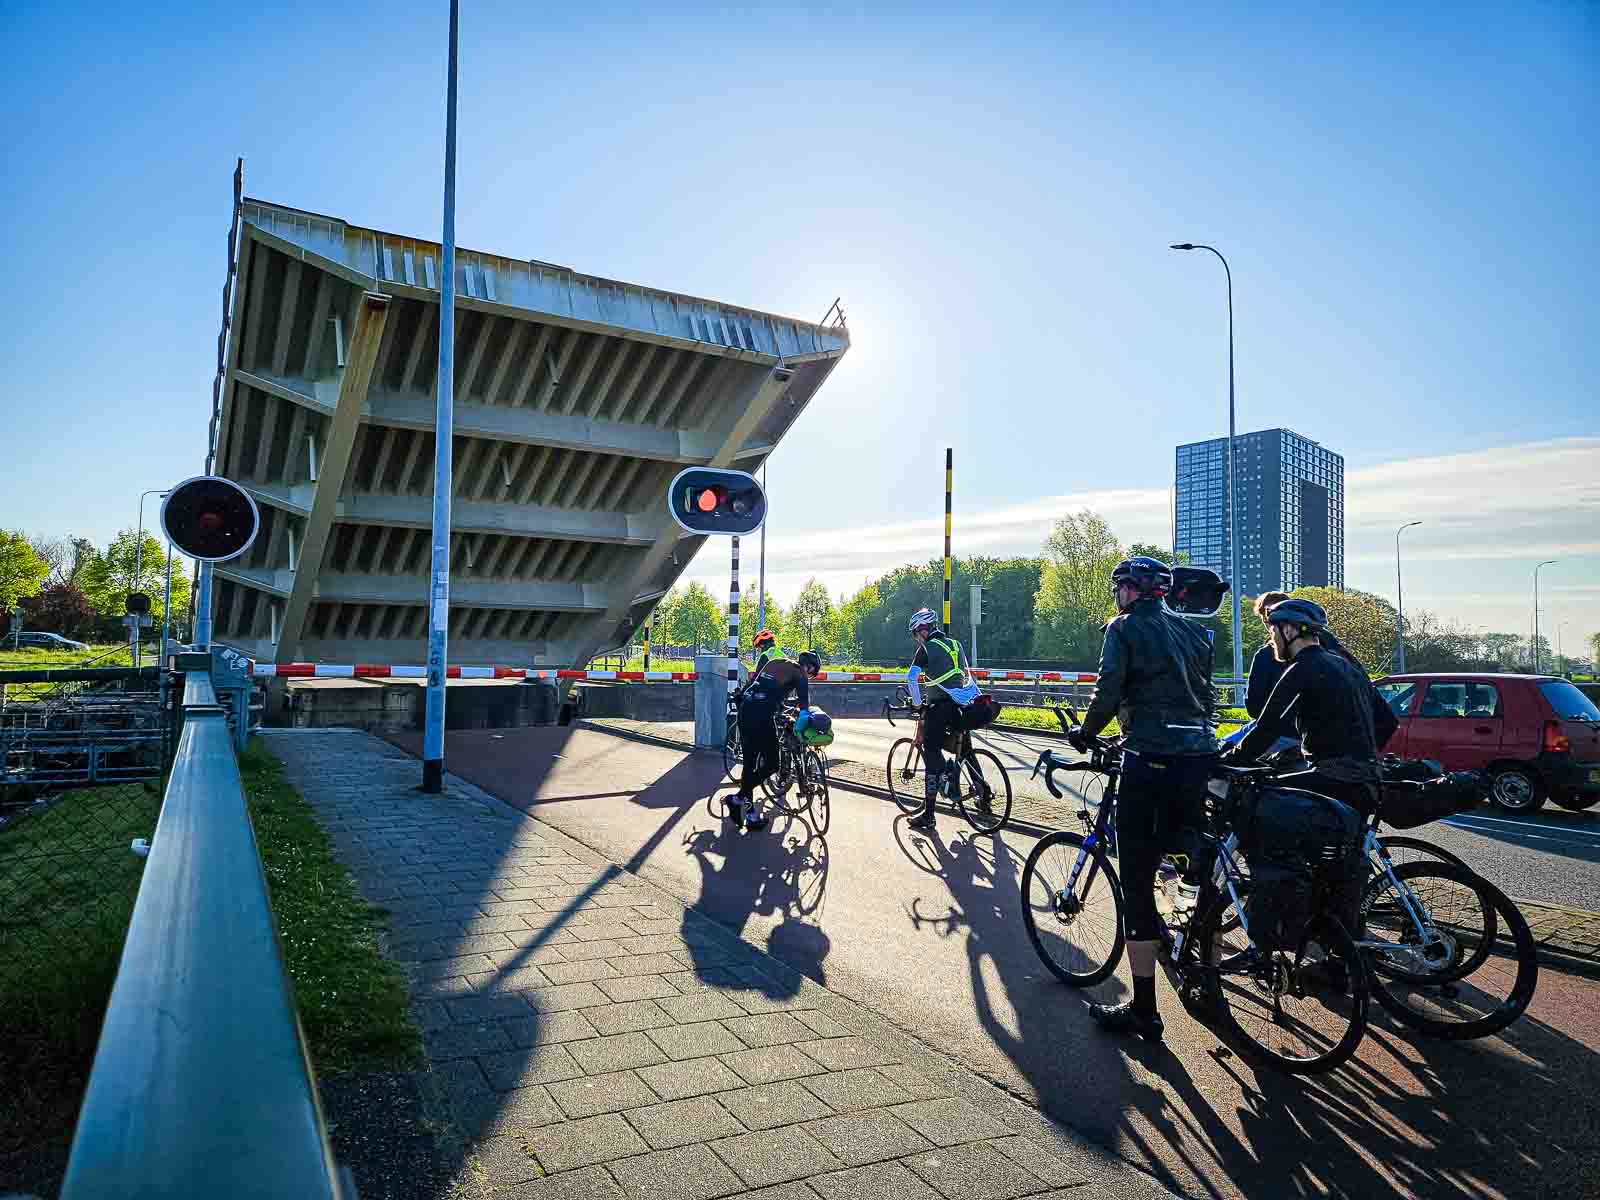 Vari partecipanti alla Corsa intorno ai Paesi Bassi sono in attesa presso un ponte sopraelevato.